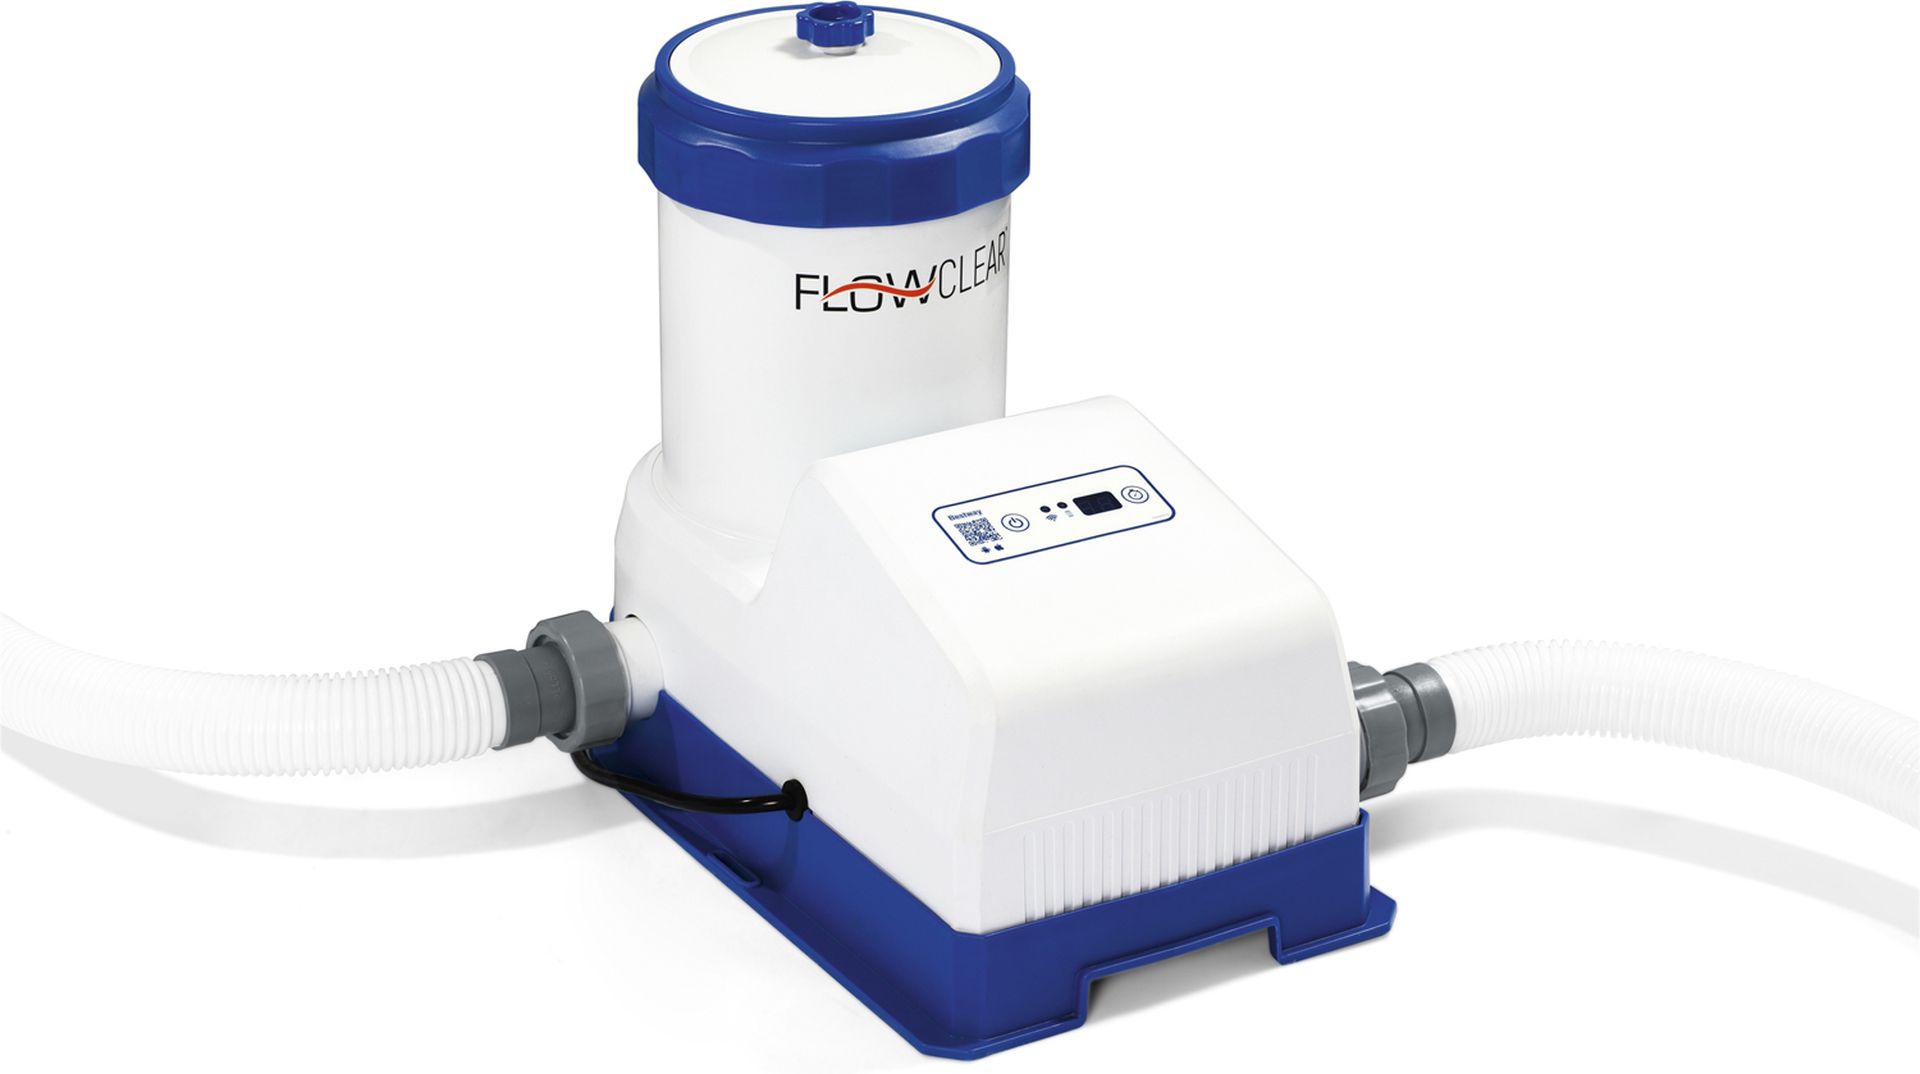 BESTWAY Flowclear Filtrační čerpadlo s časovačem 7.570 l/h, 125 W 58680